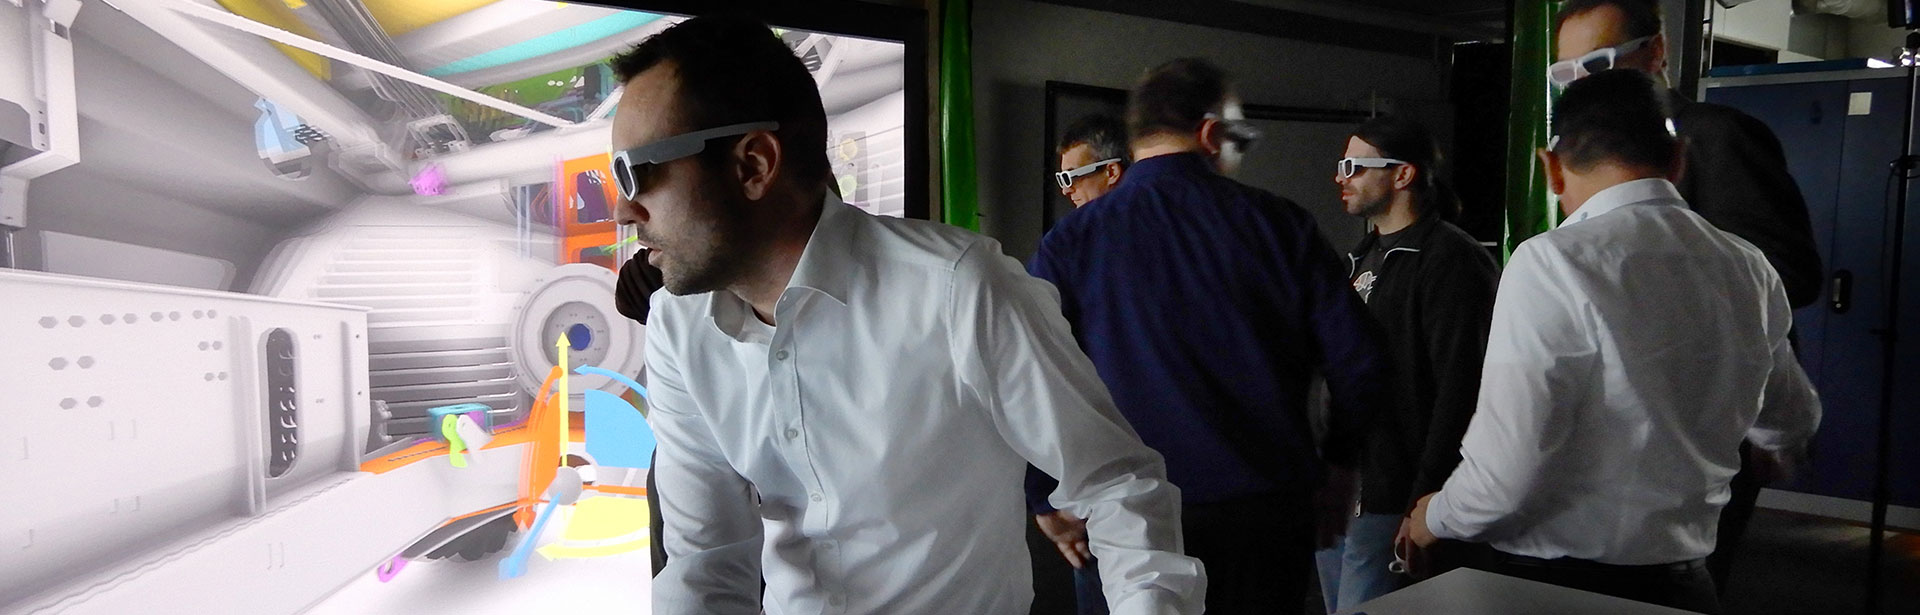 Männer mit VR-Brillen schauen auf einen Bildschirm